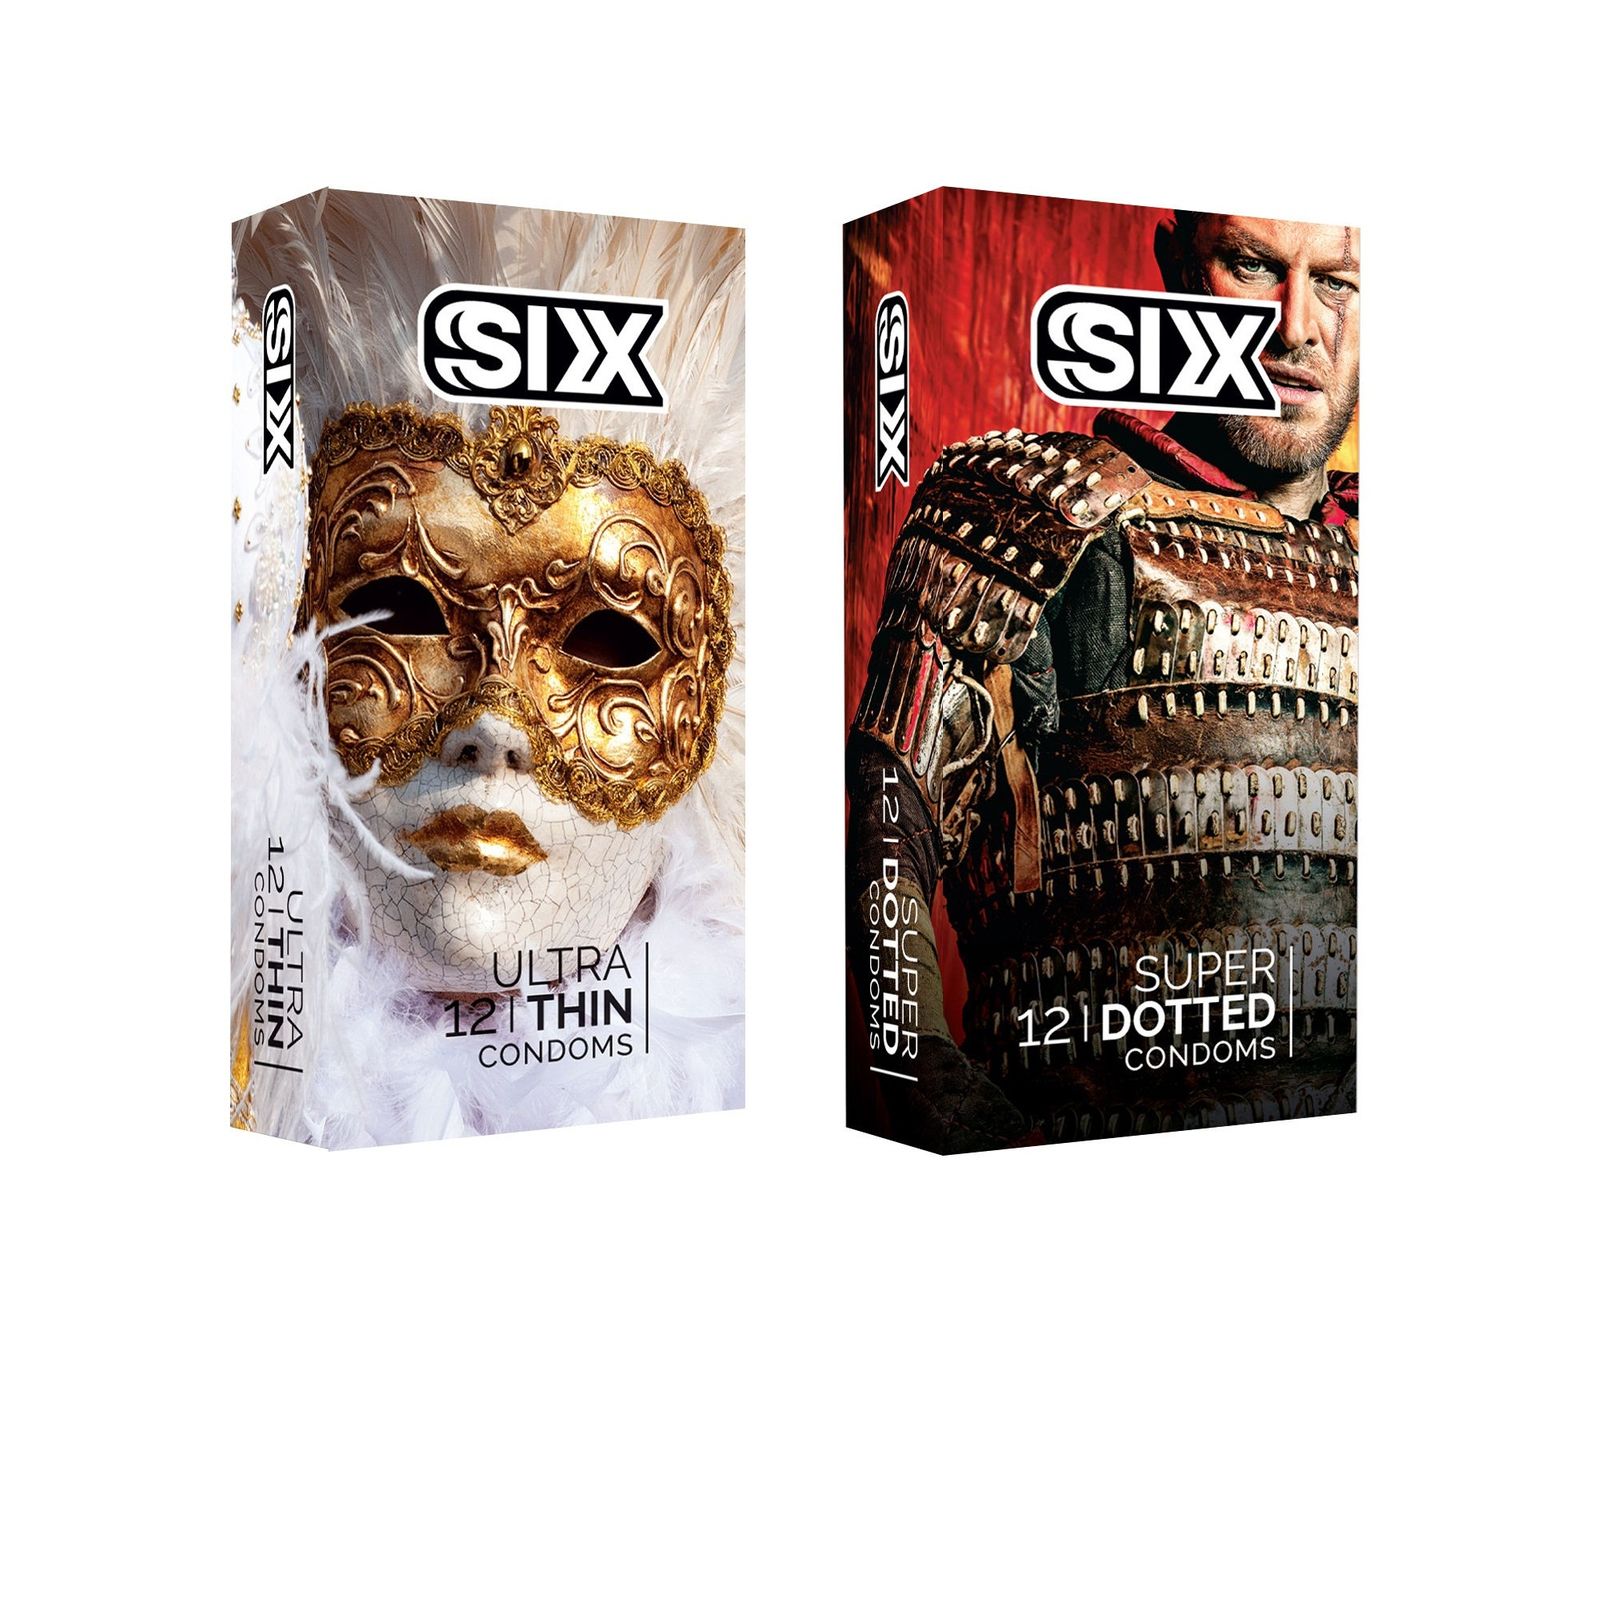 کاندوم سیکس مدل Ultra Thin بسته 12 عددی به همراه کاندوم سیکس مدل superdotted بسته 12 عدد -  - 1